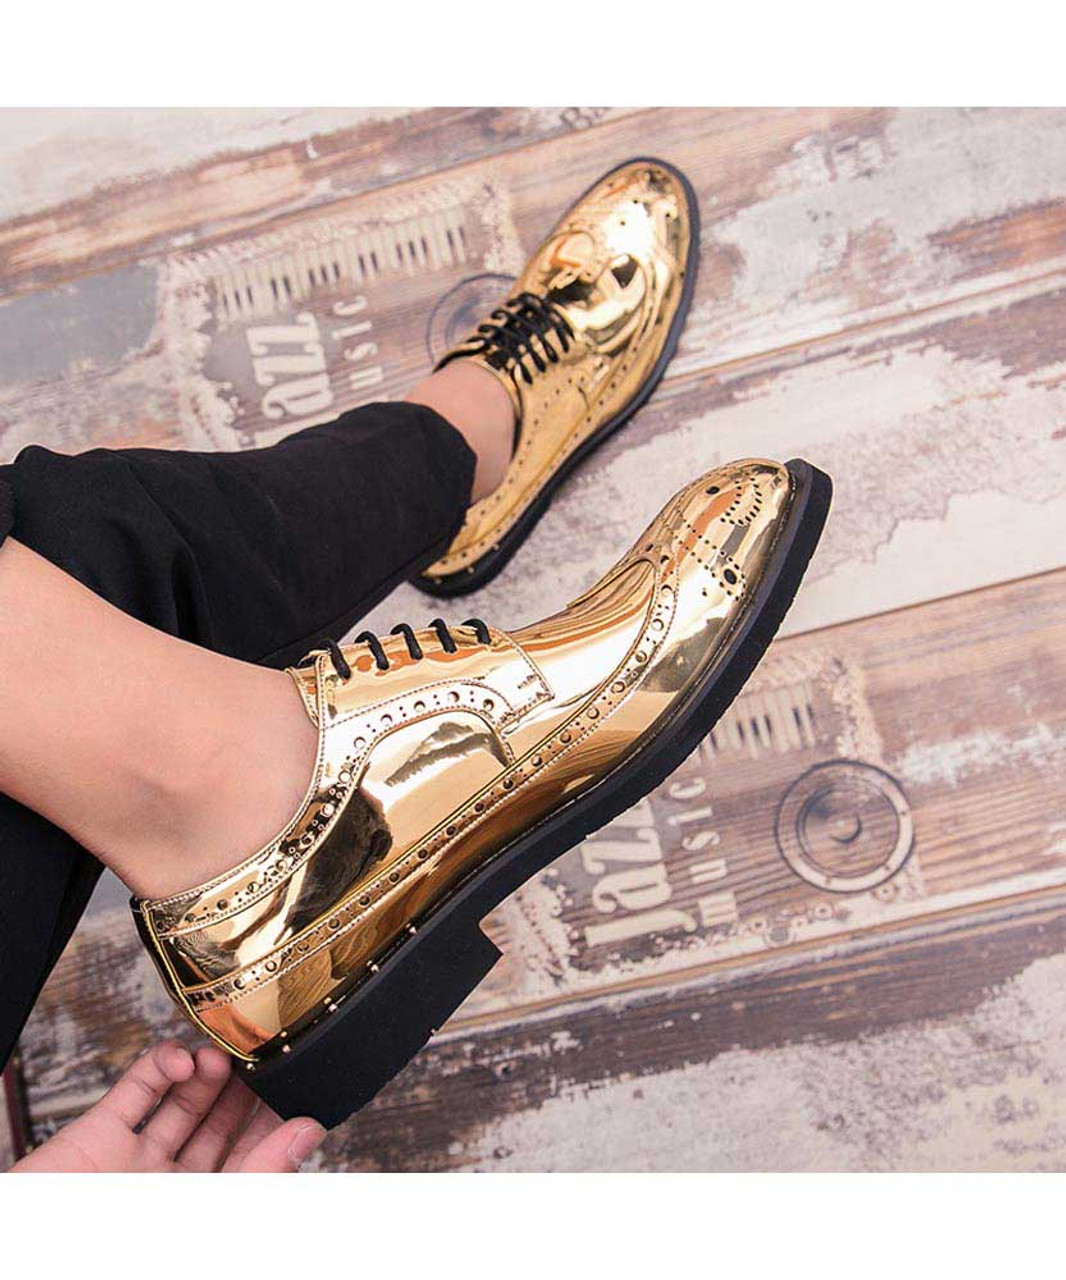 Golden brogue patent leather derby dress shoe | Mens dress shoes online ...